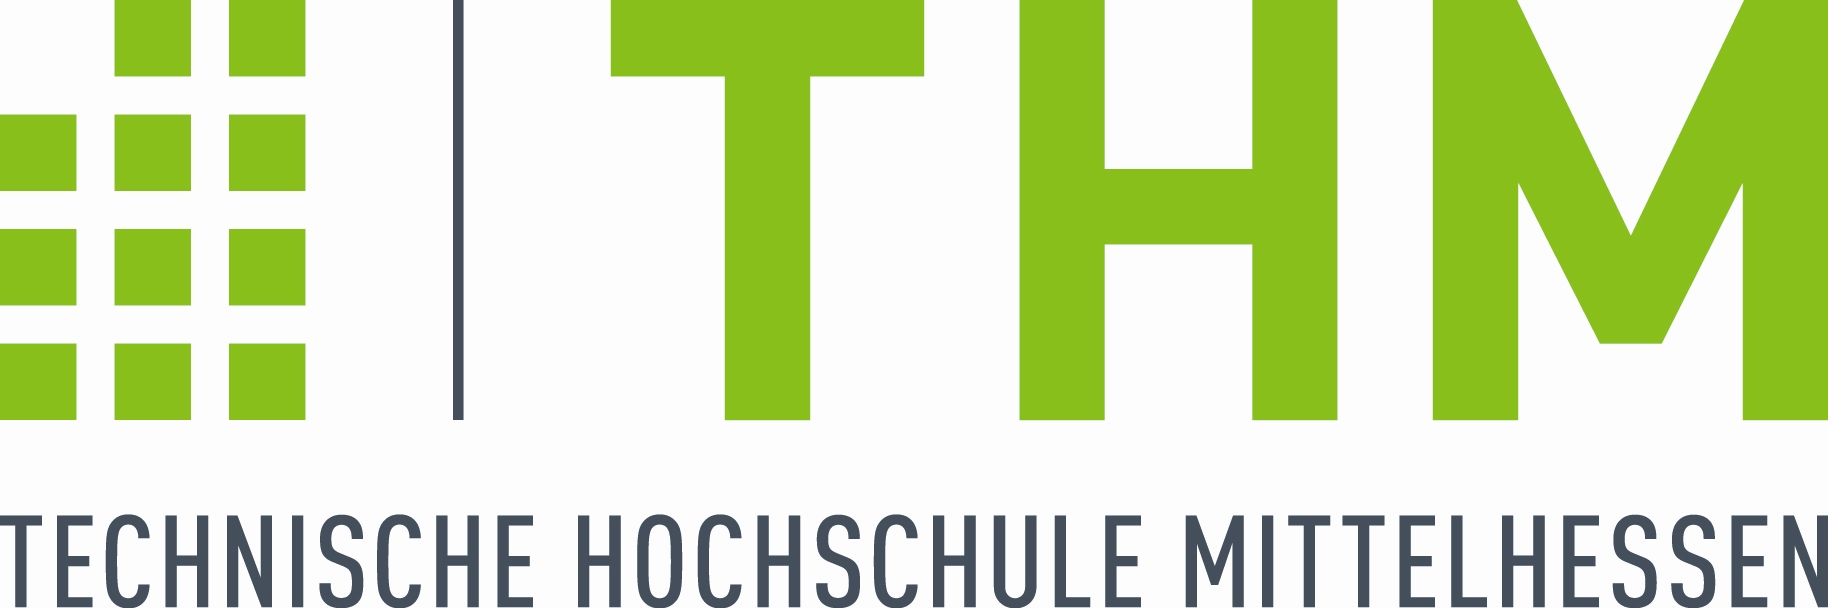 Logo: Technische Hochschule Mittelhessen